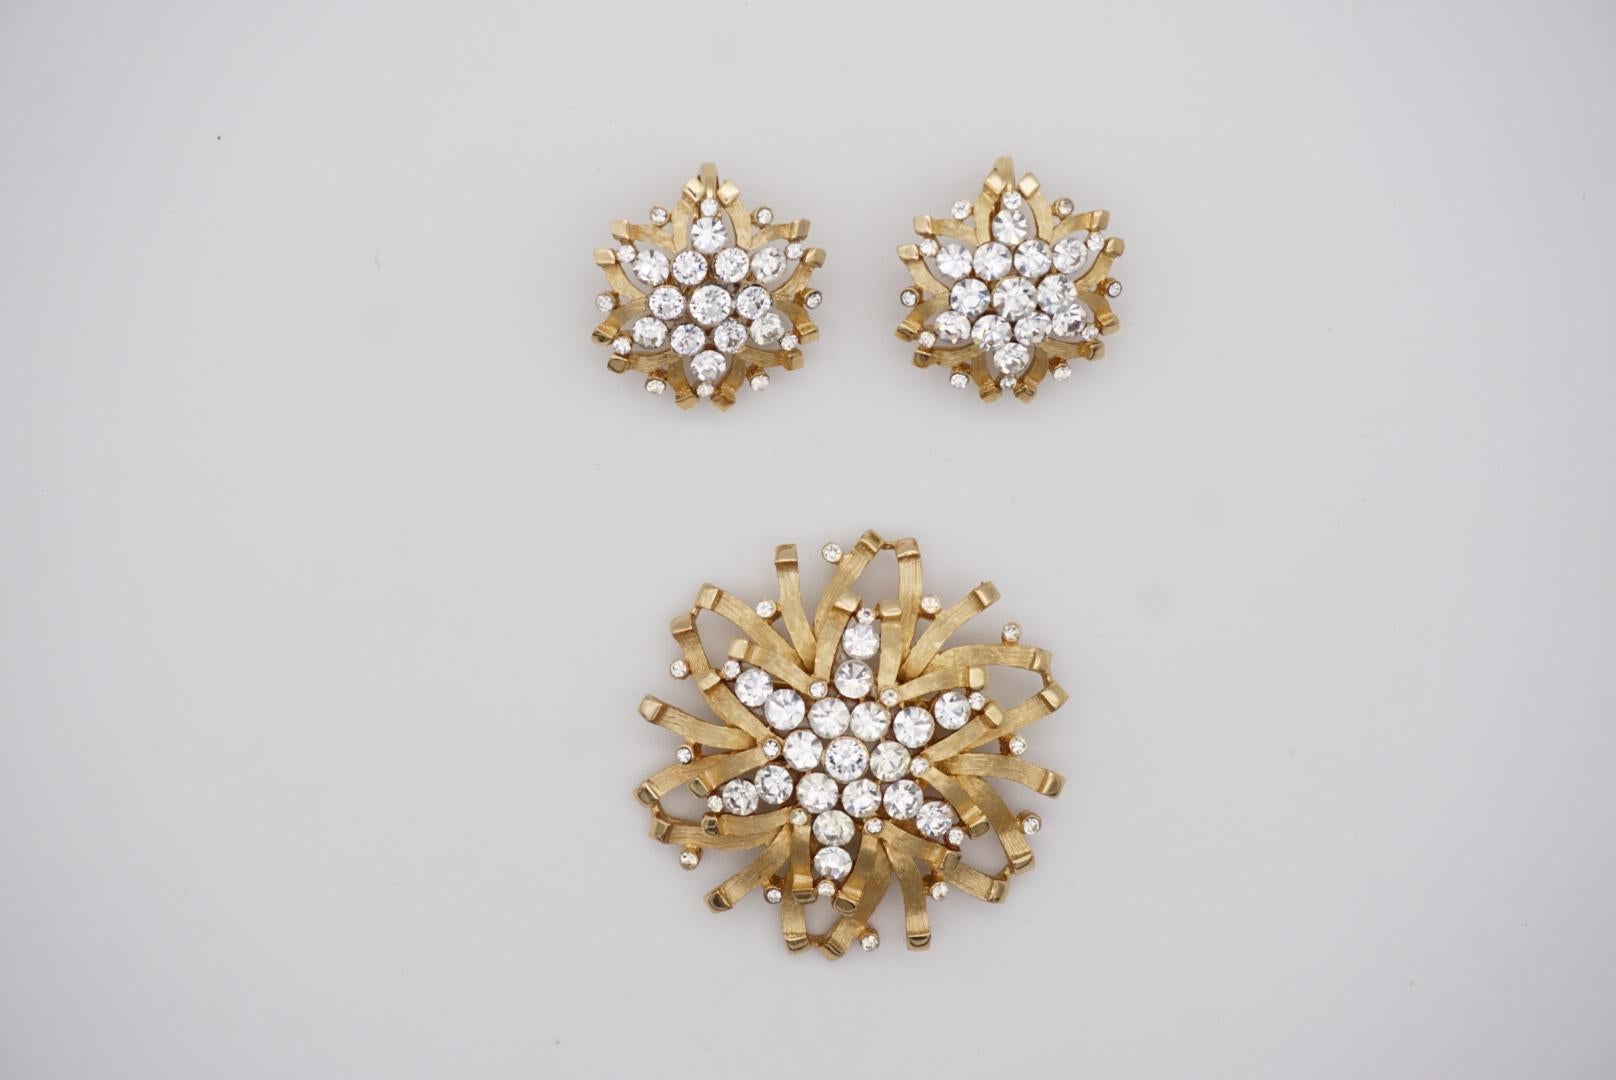 Crown Trifari Vintage 1950s Snowflakes Crystals Jewellery Set Earrings Brooch For Sale 5